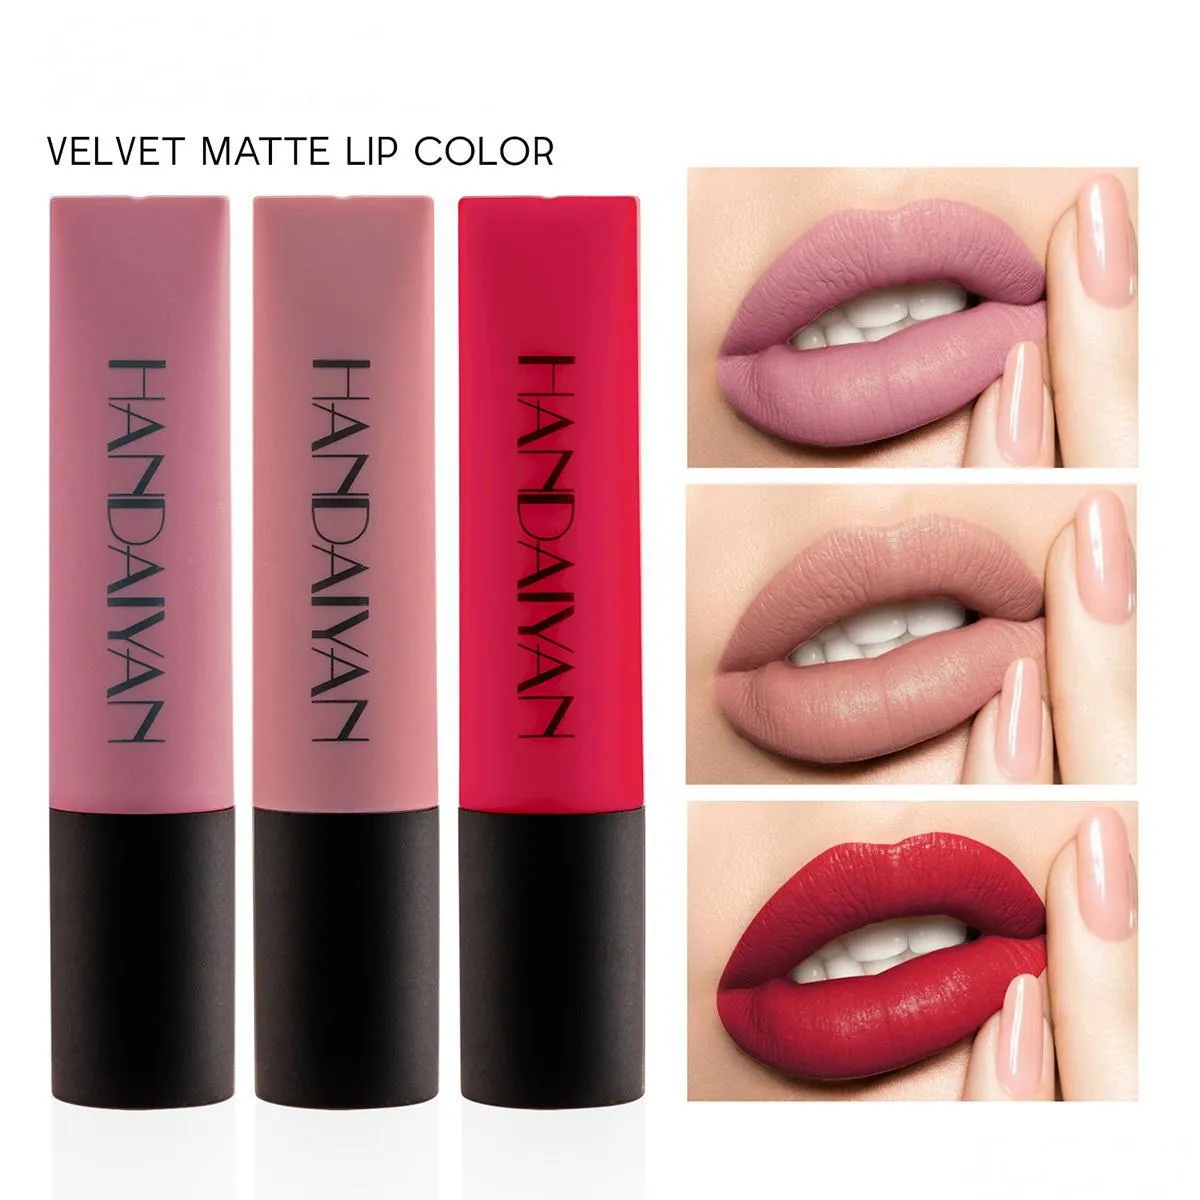 handaiyan matte lip gloss velvet air lips glaze liquid lipstick moisturizer non sticky makeup lipgloss